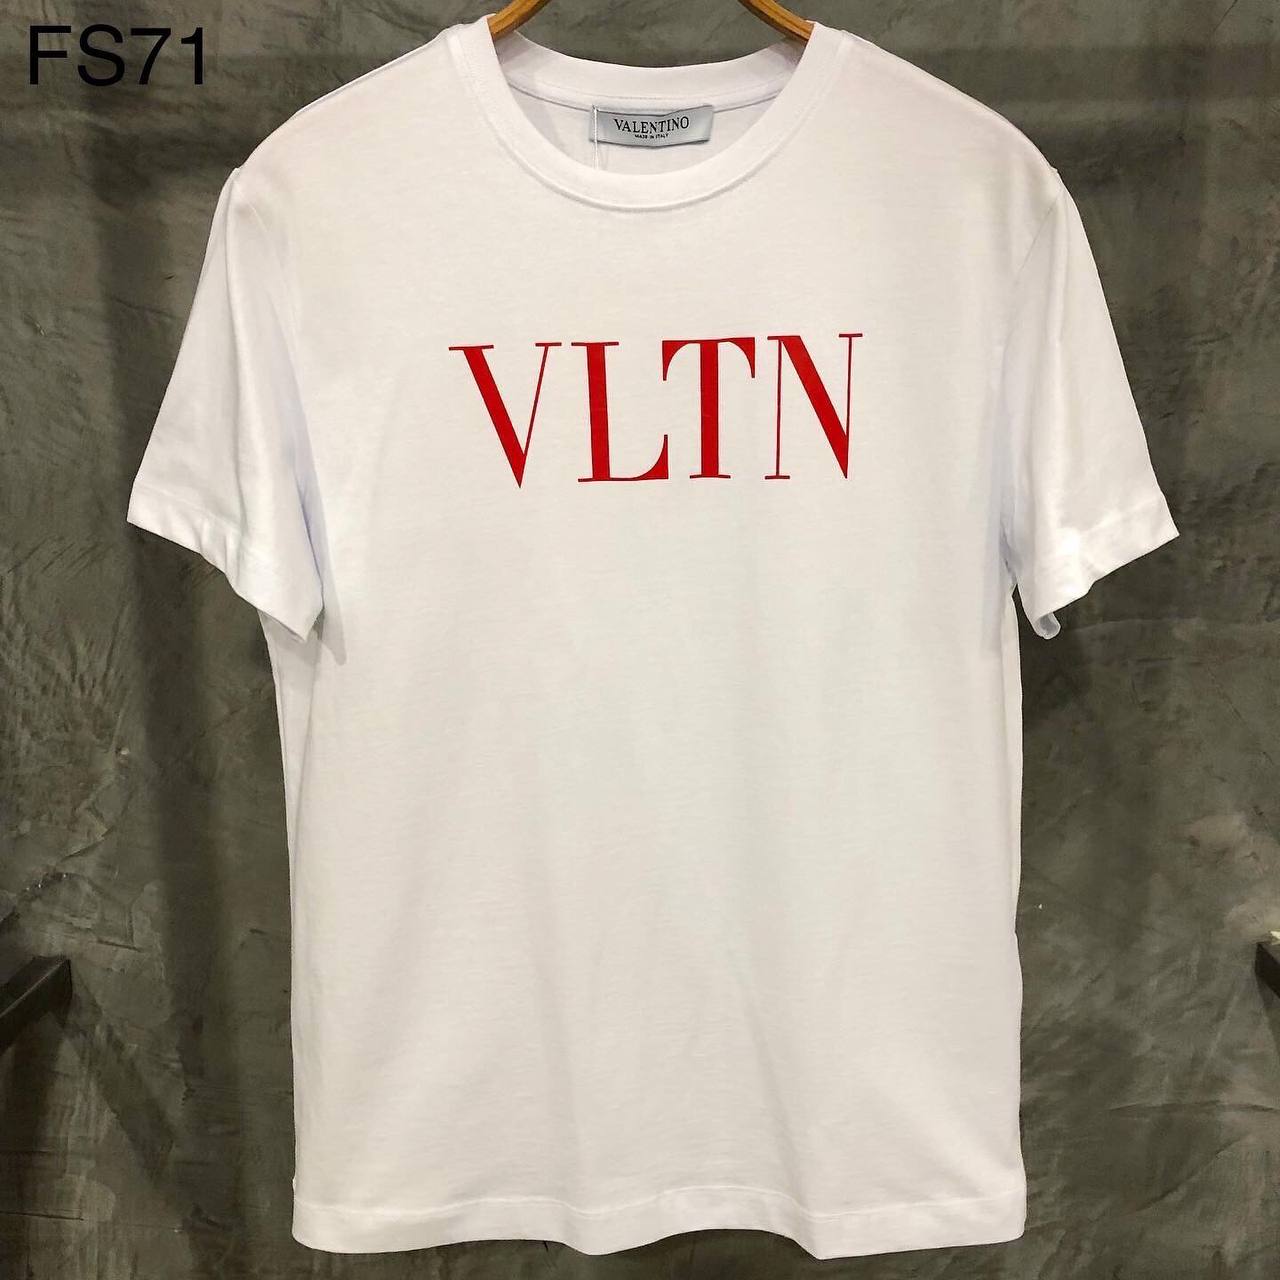 'VLTN' Printed Logo White Tshirt For Men